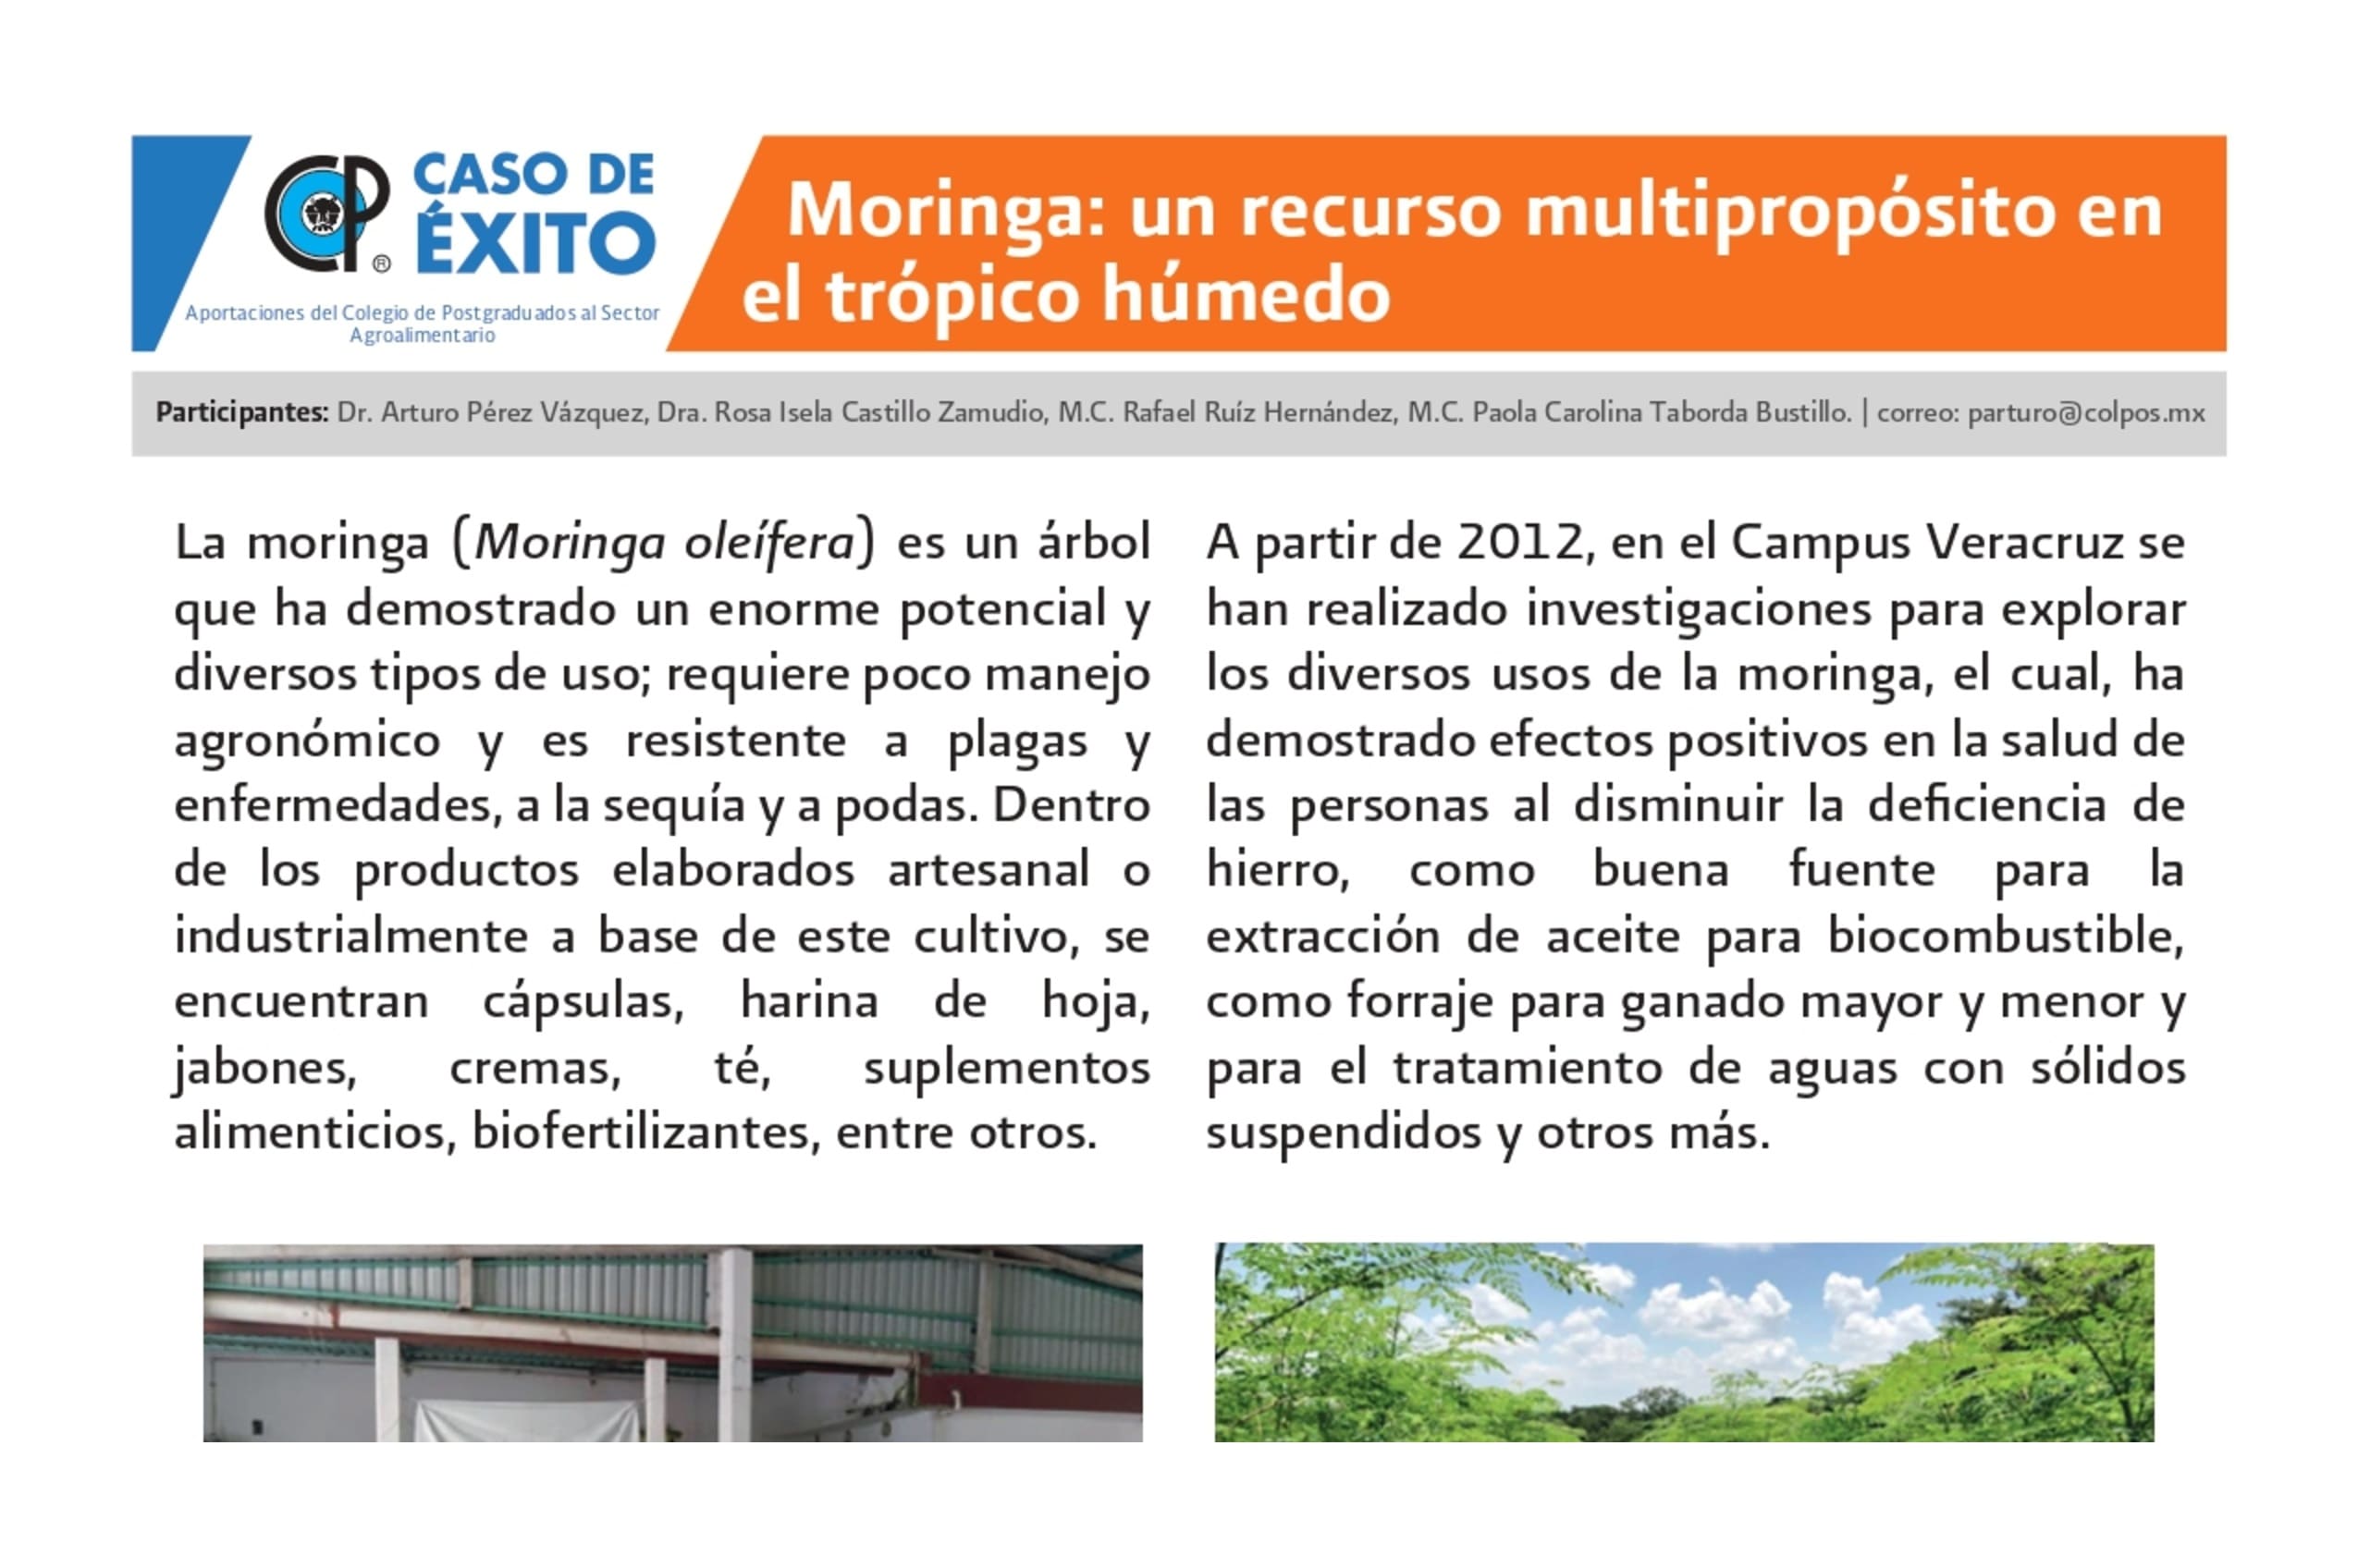 Moringa: un recurso multipropósito en el trópico húmedo.